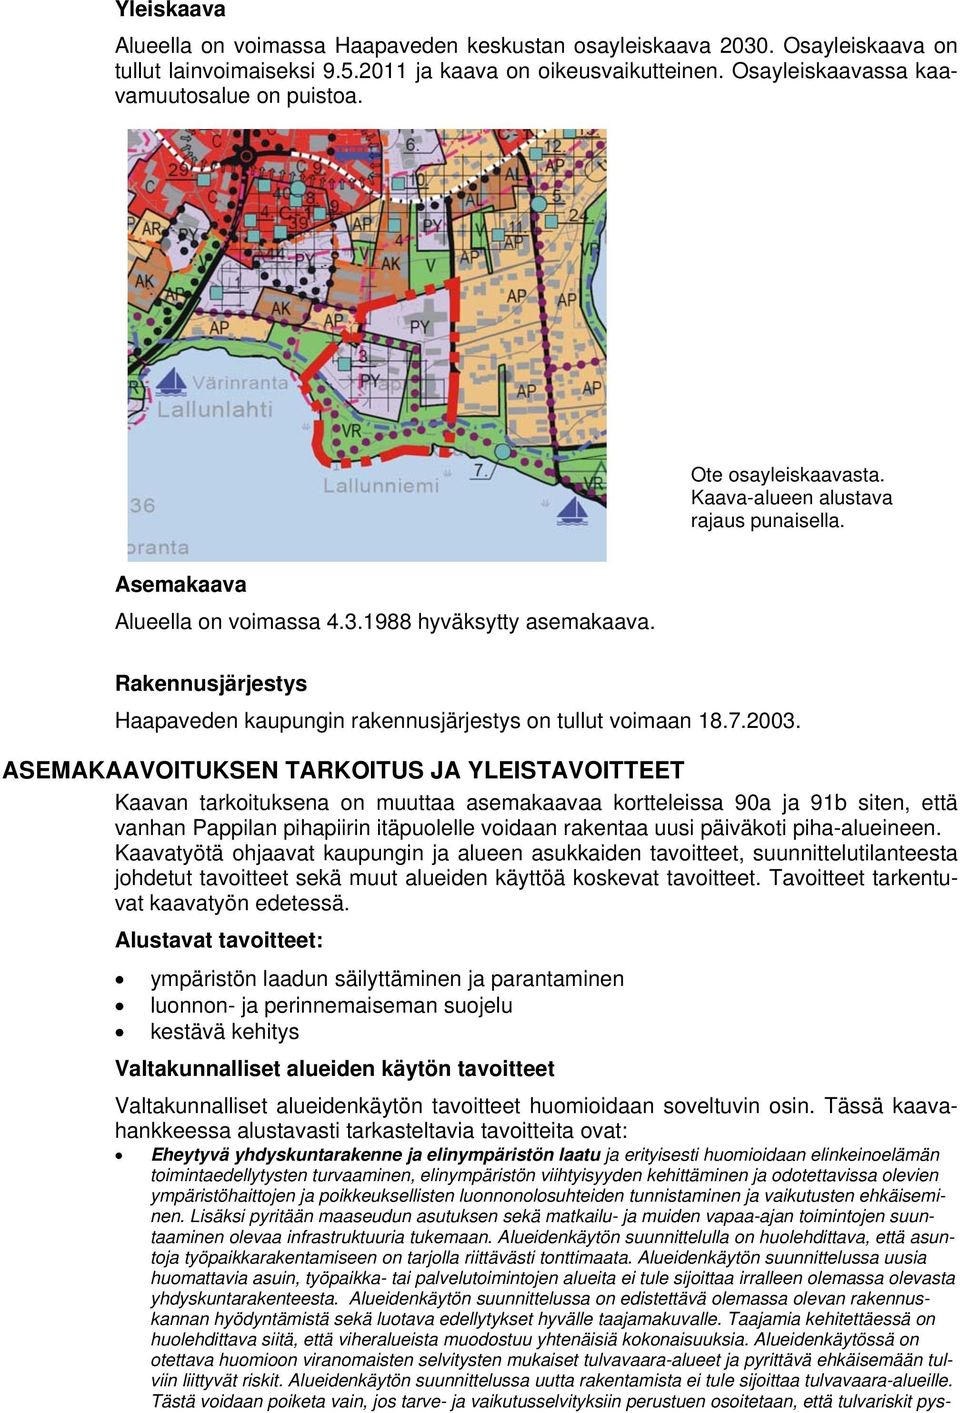 Rakennusjärjestys Haapaveden kaupungin rakennusjärjestys on tullut voimaan 18.7.2003.